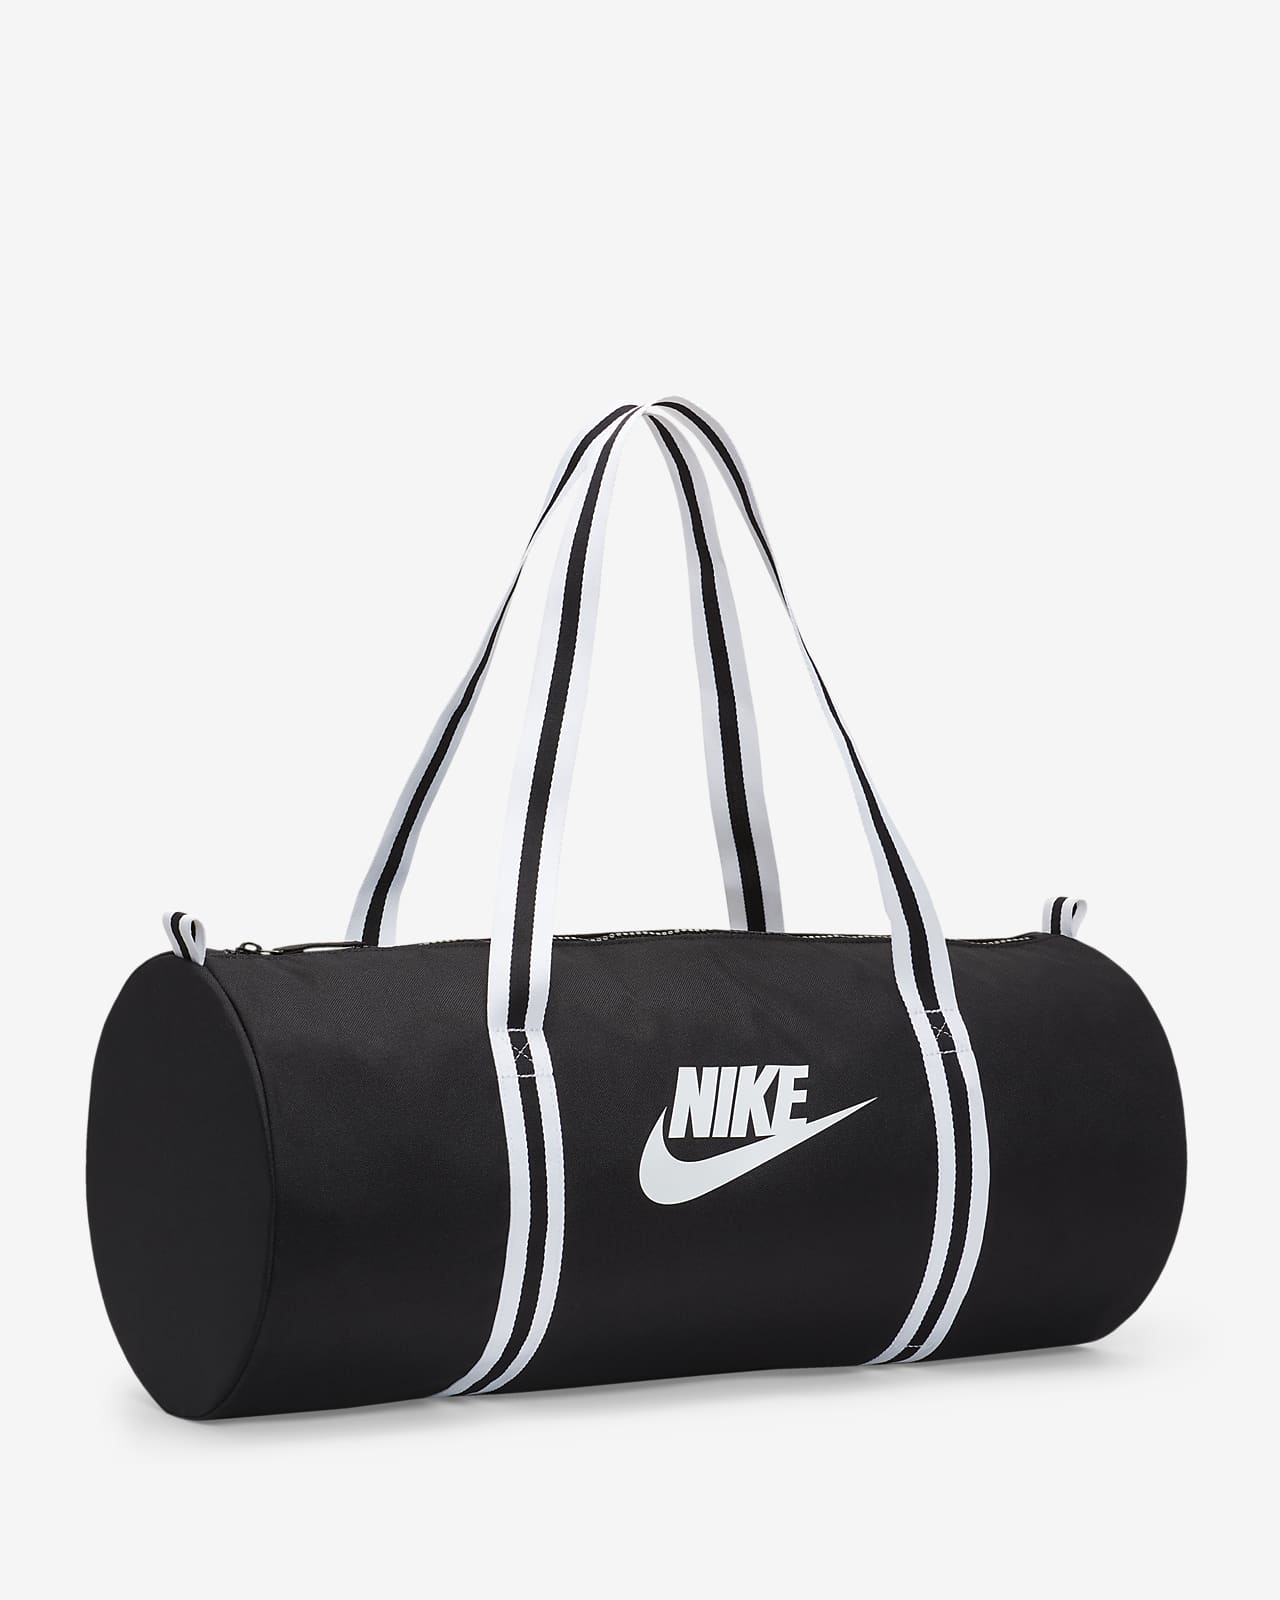 Men Women Unisex Nike Yoga Mat Gym Bag (21L) Black 29" L X 6" W X  6" H | eBay